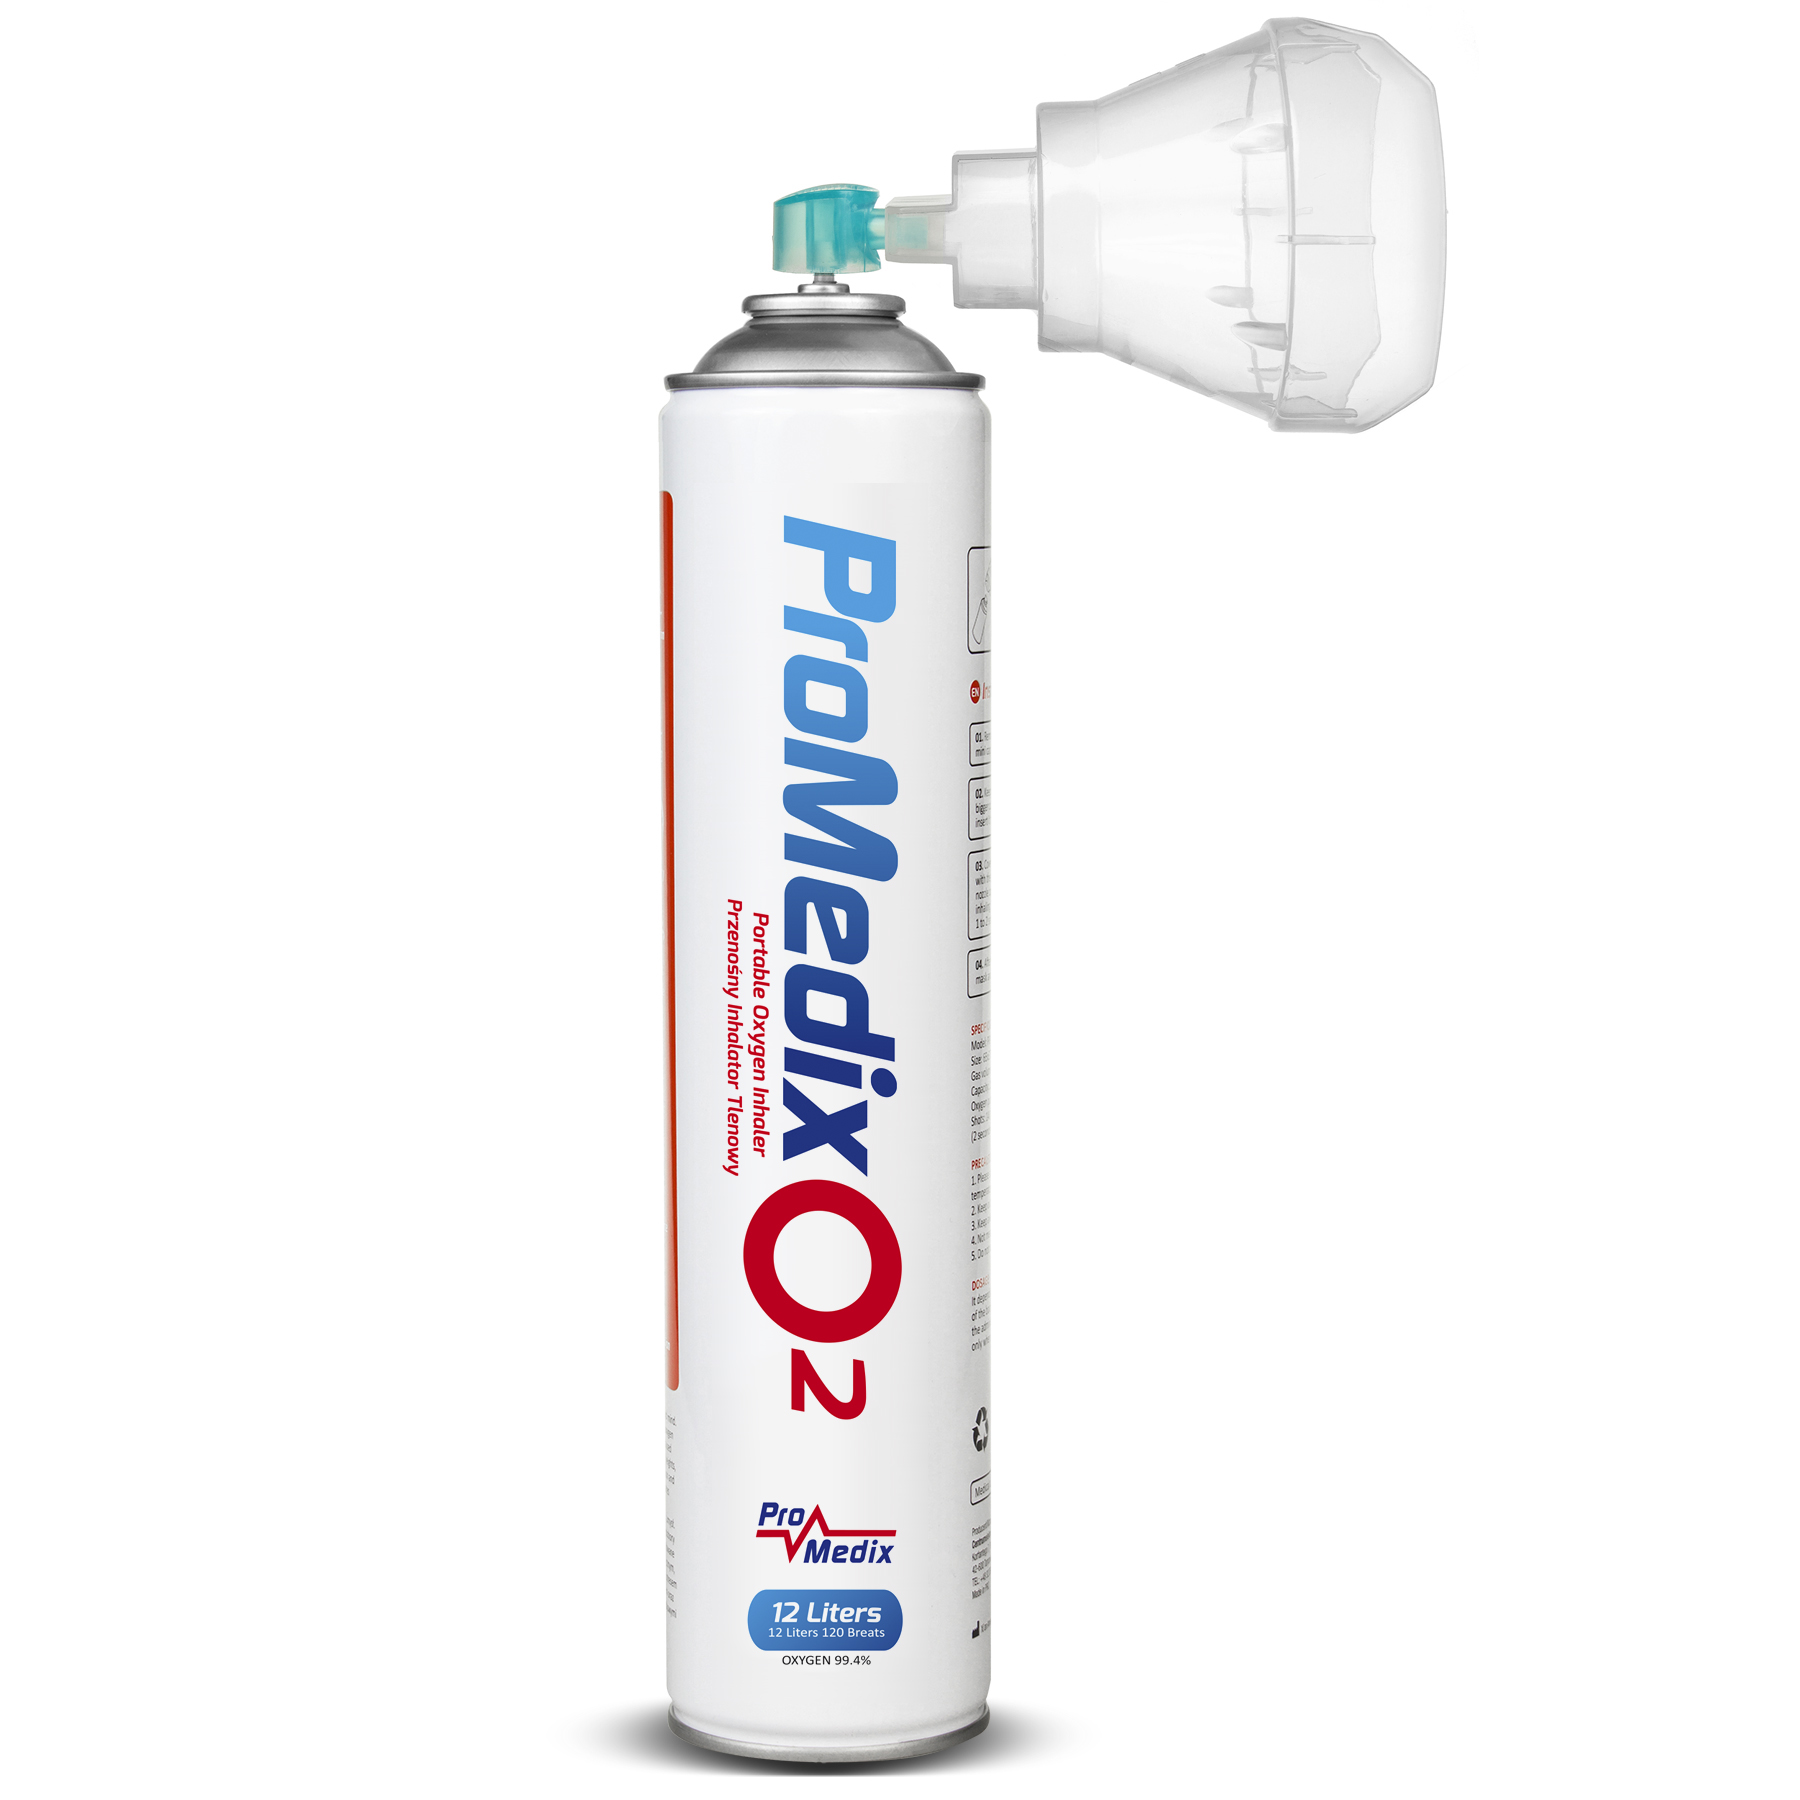 Ossigeno per inalazione al 99,4% Promedix  PR-994